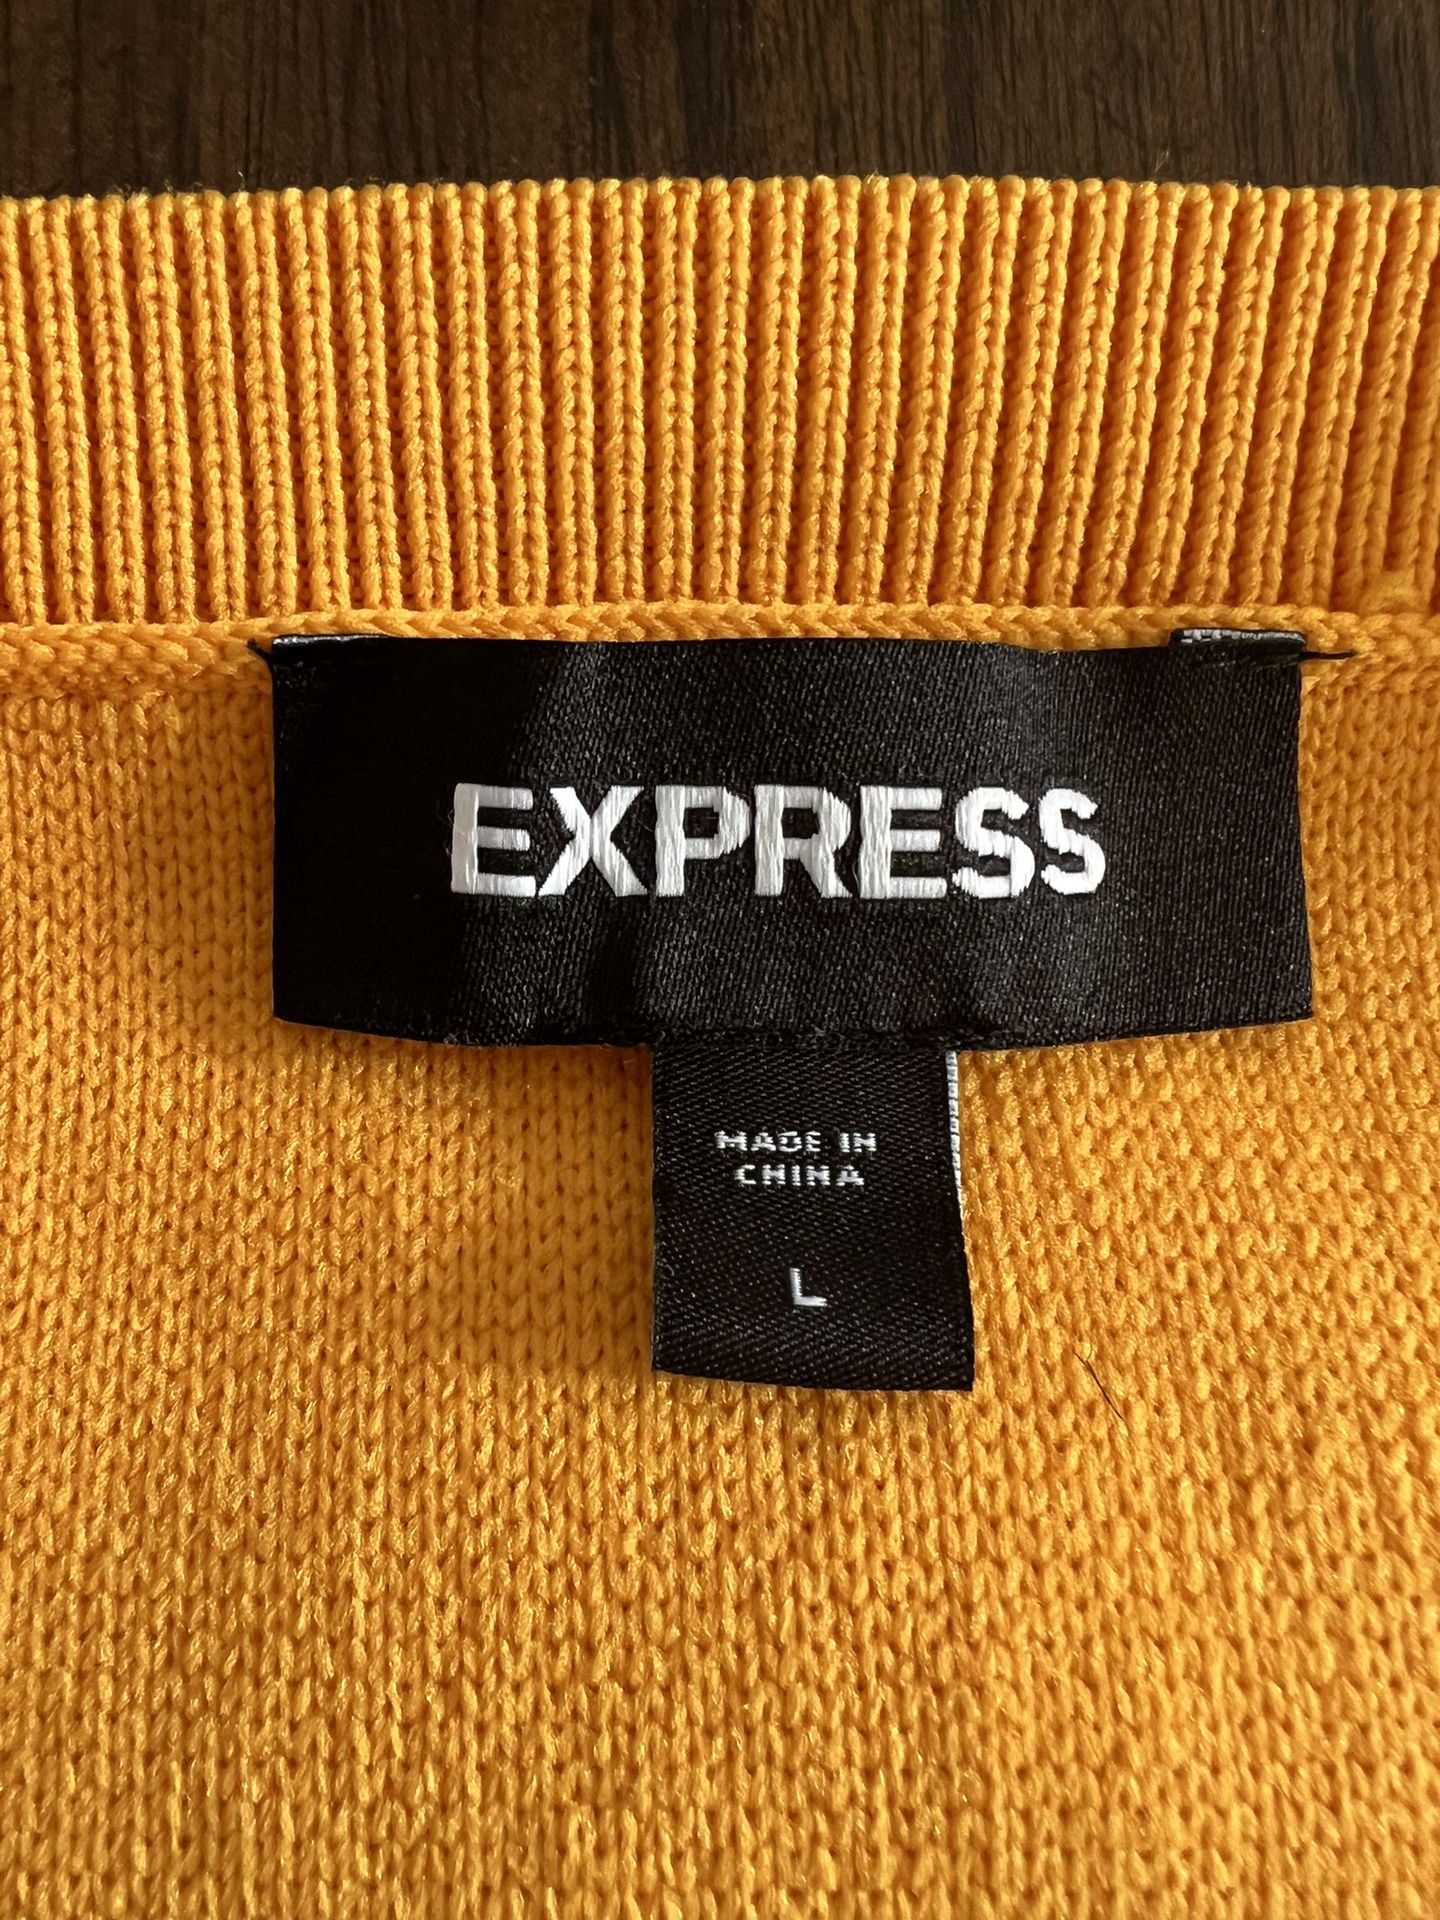 Express Vests 